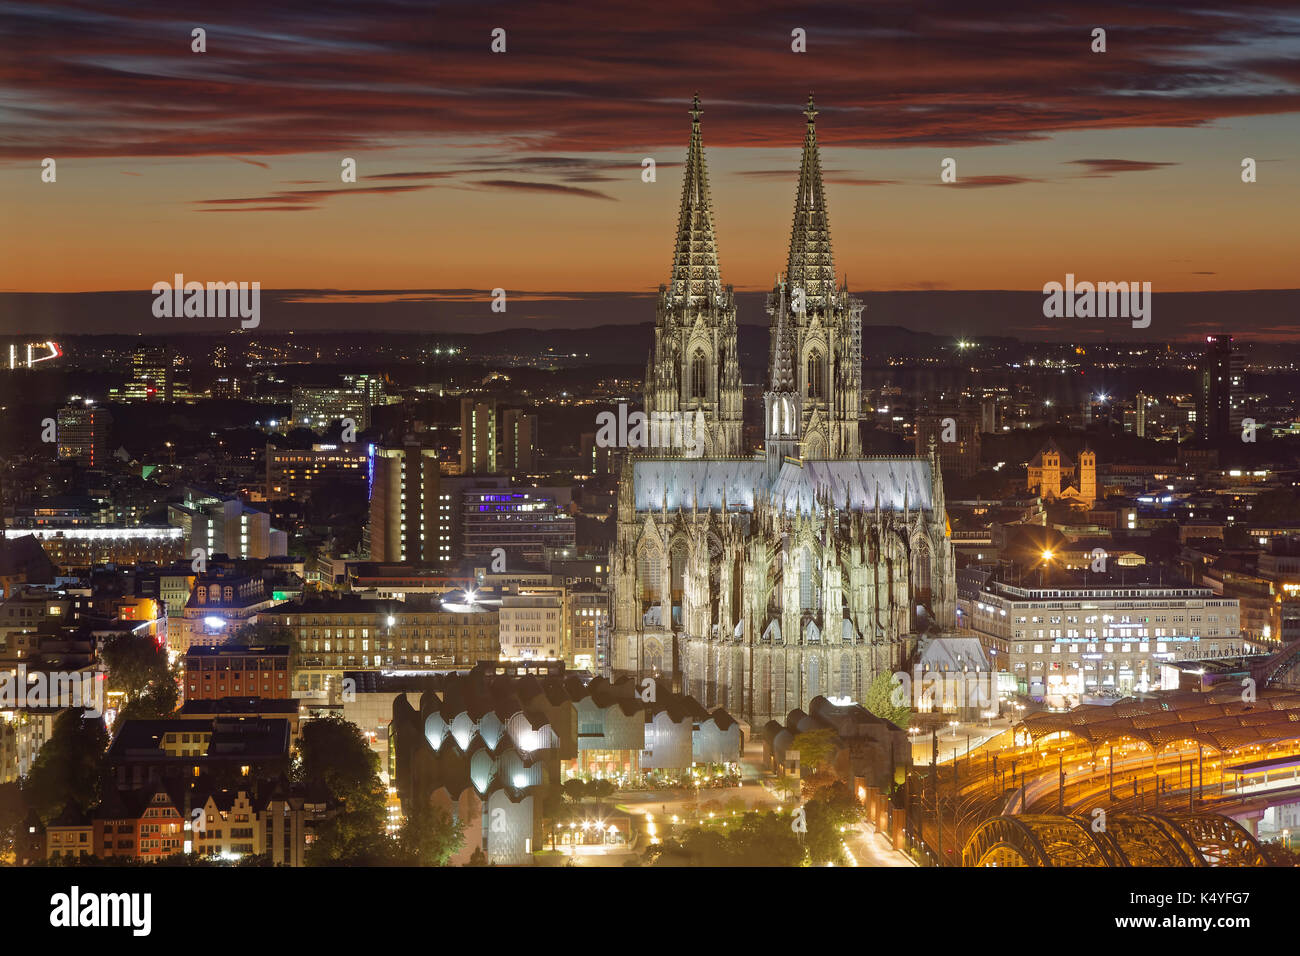 La catedral de colonia al atardecer, Colonia, Renania del Norte-Westfalia, Alemania Foto de stock